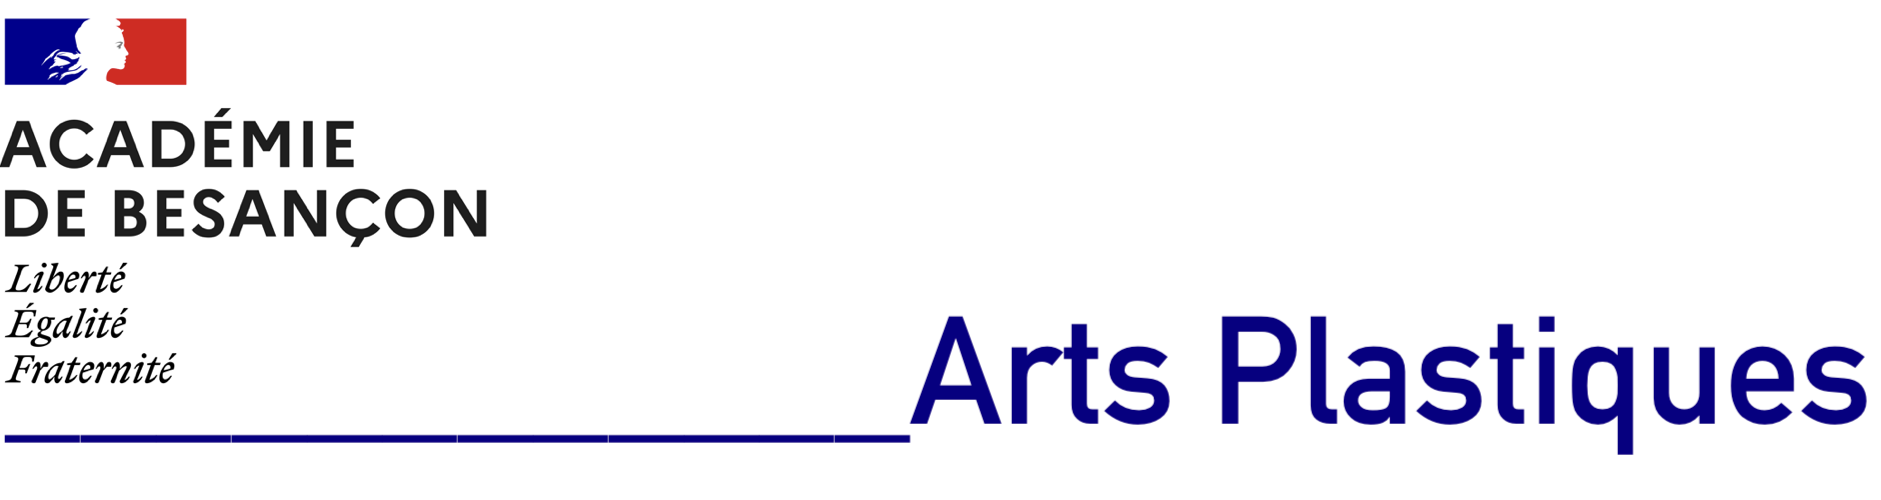 Logo de l'académie de Besançon. Site disciplinaire Arts Plastiques